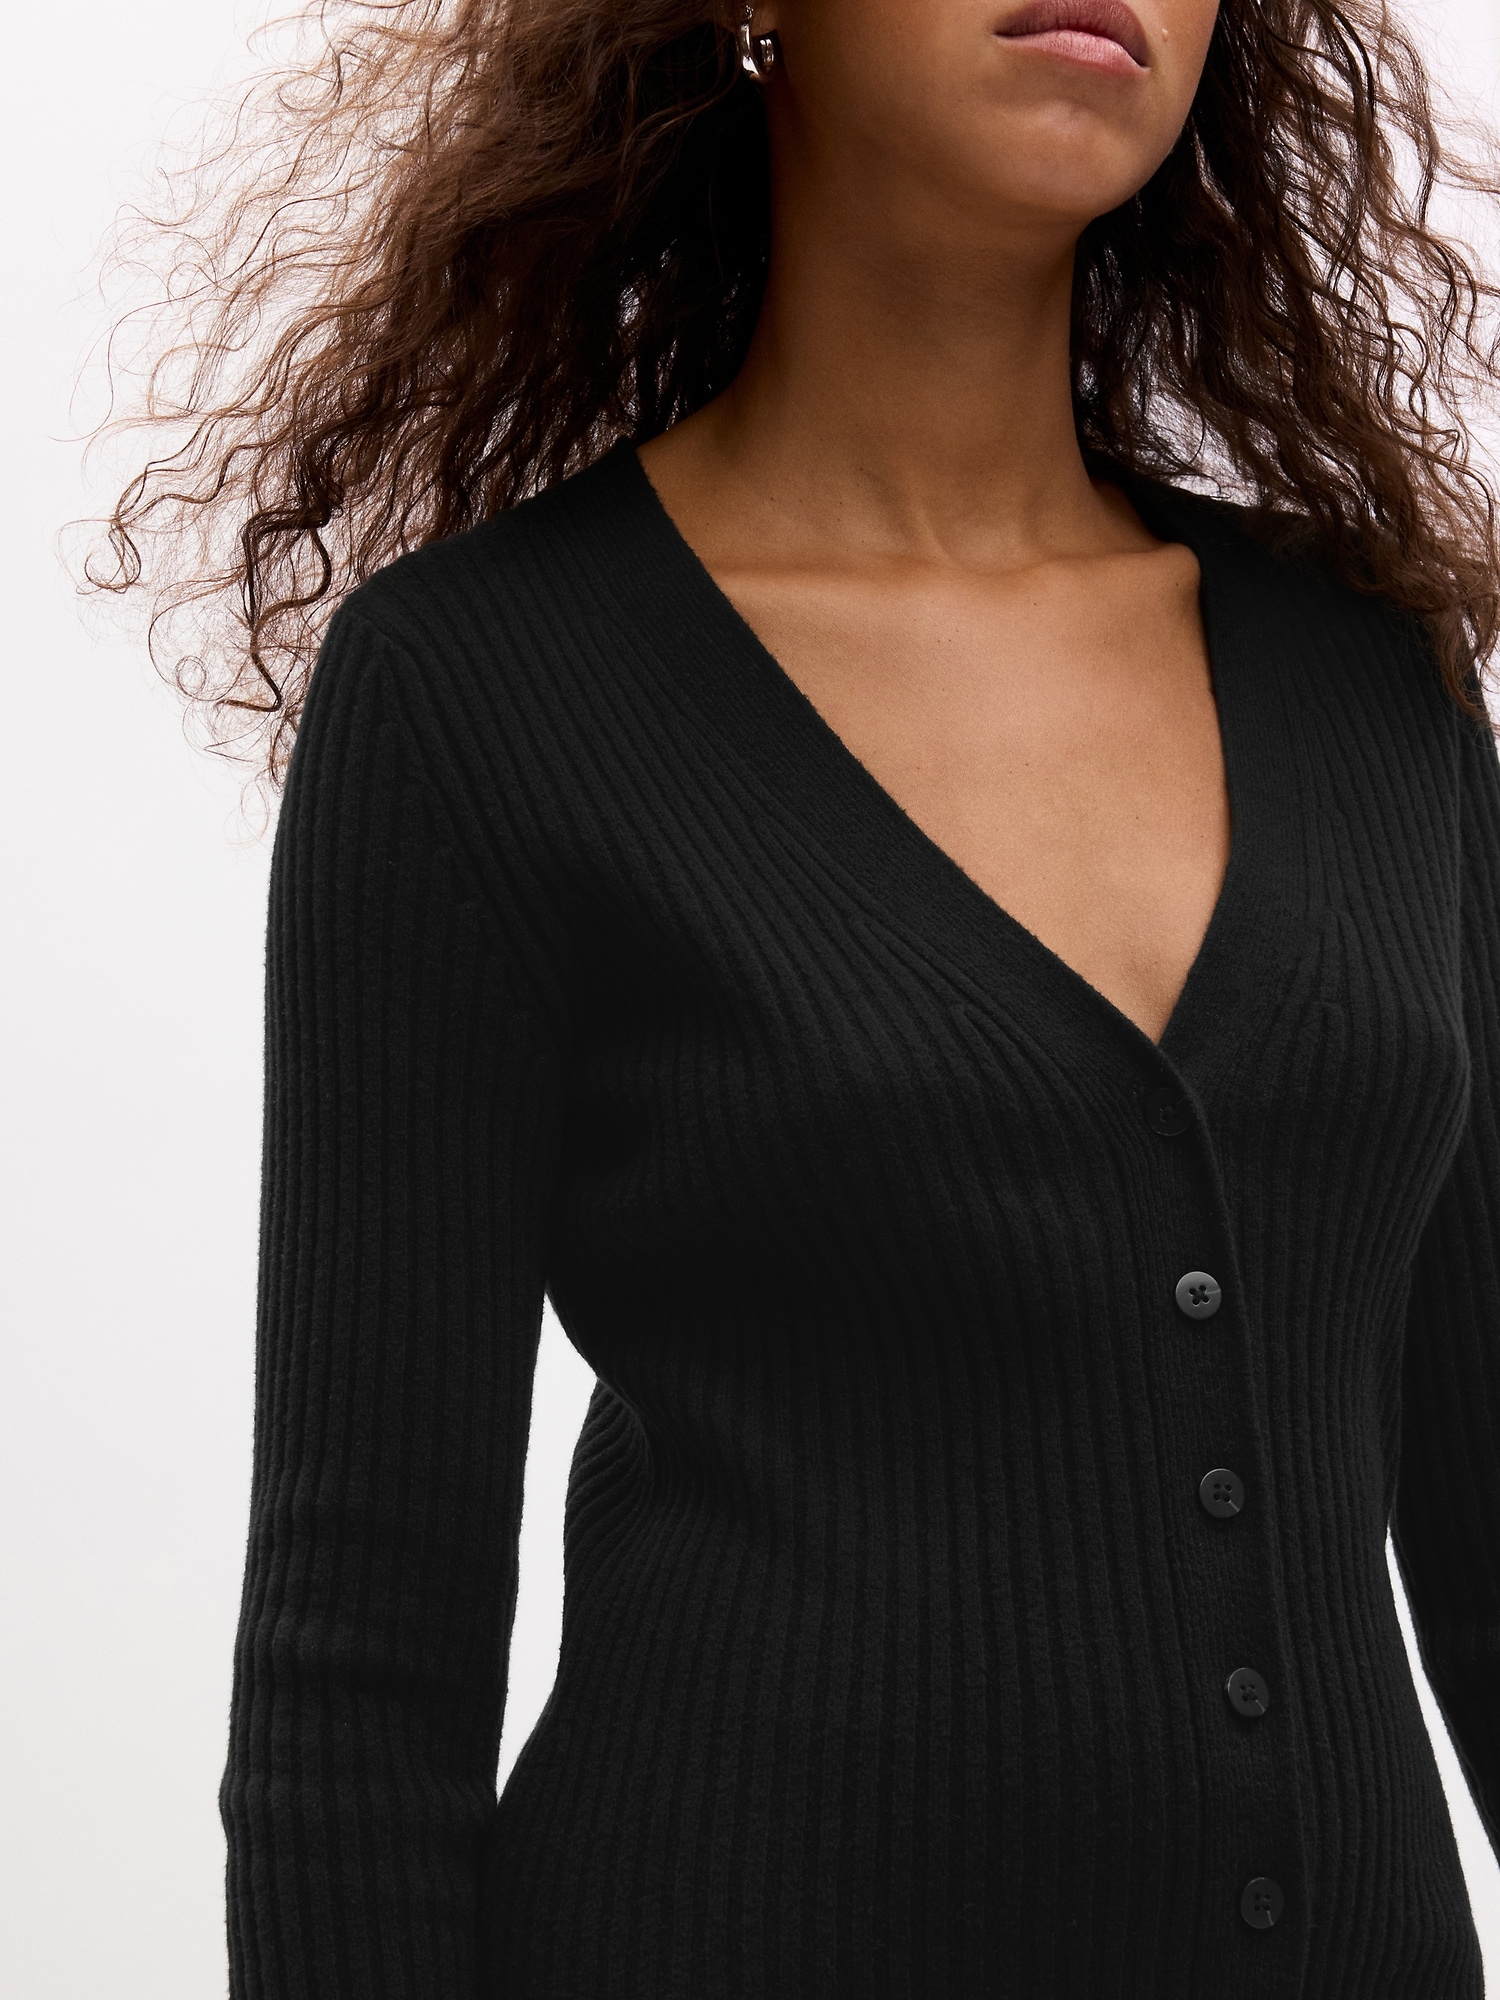 CashSoft Rib Midi Sweater Dress | Gap